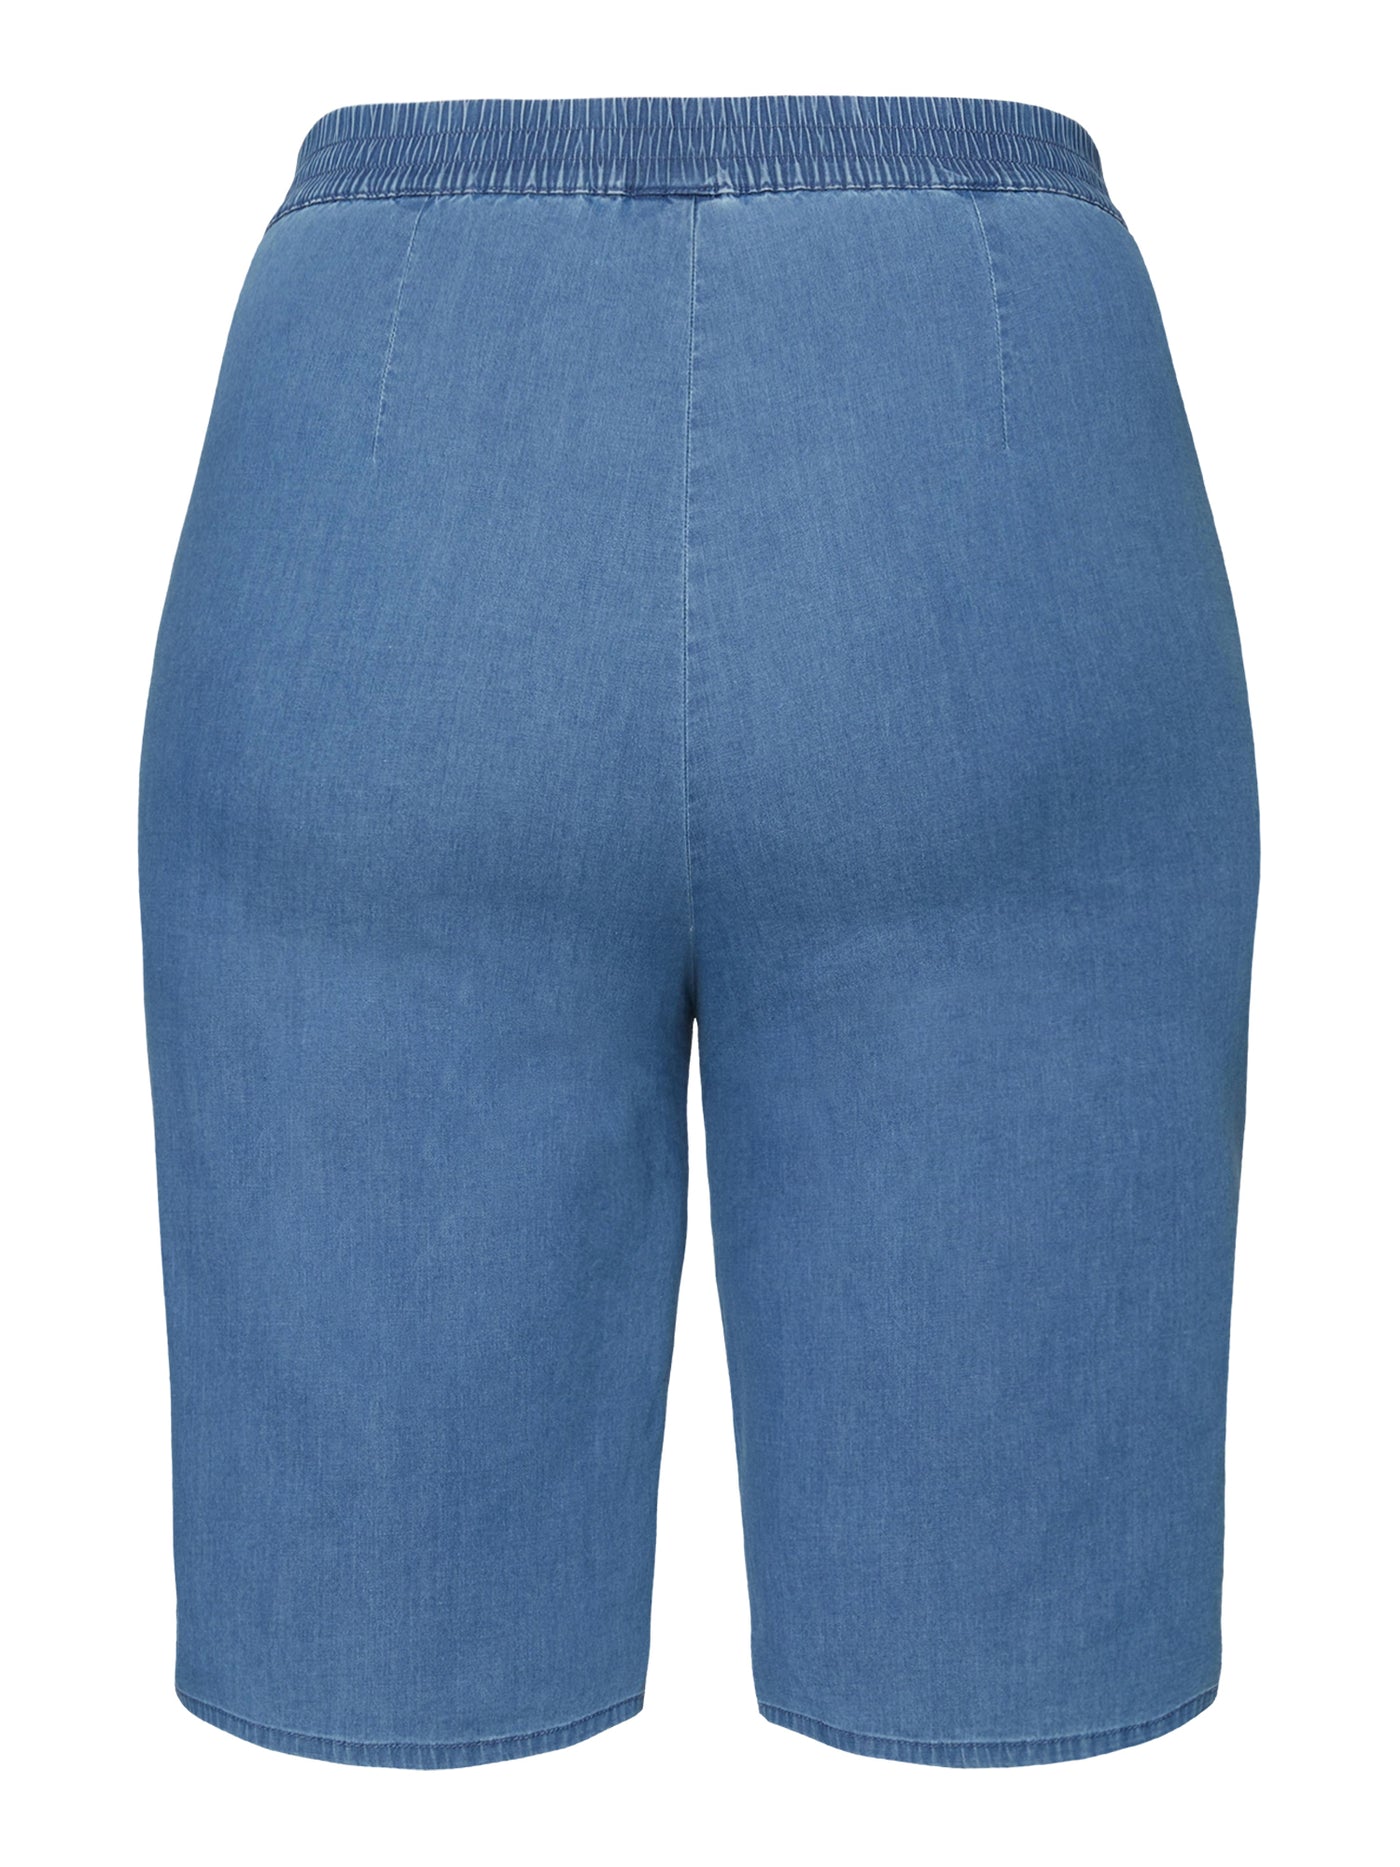 Shorts - Medium Blue Denim